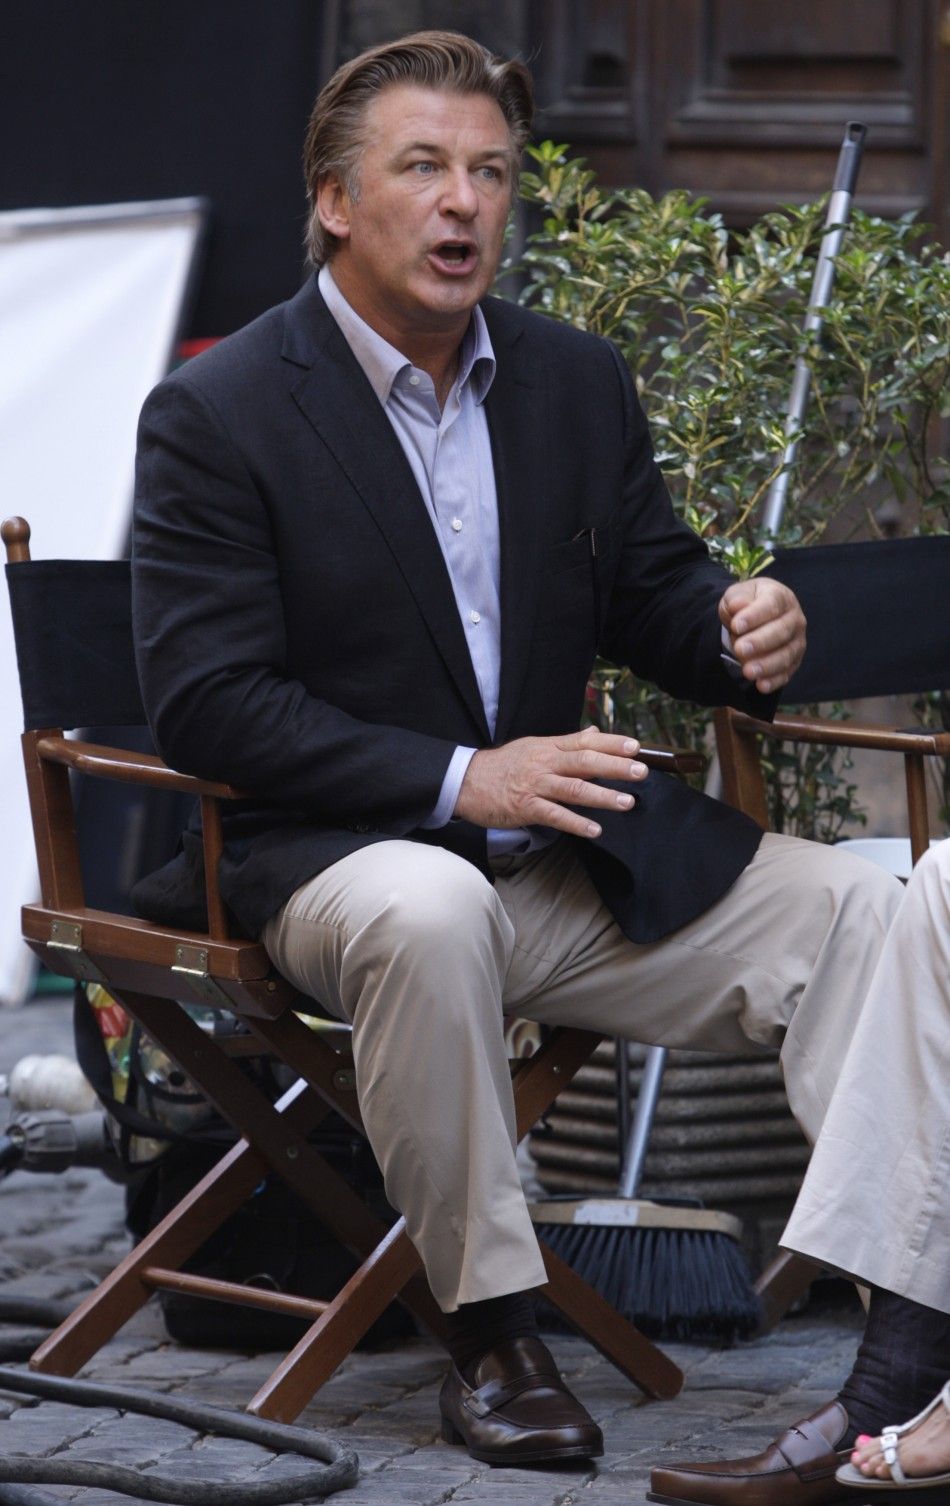 Actor Alec Baldwin